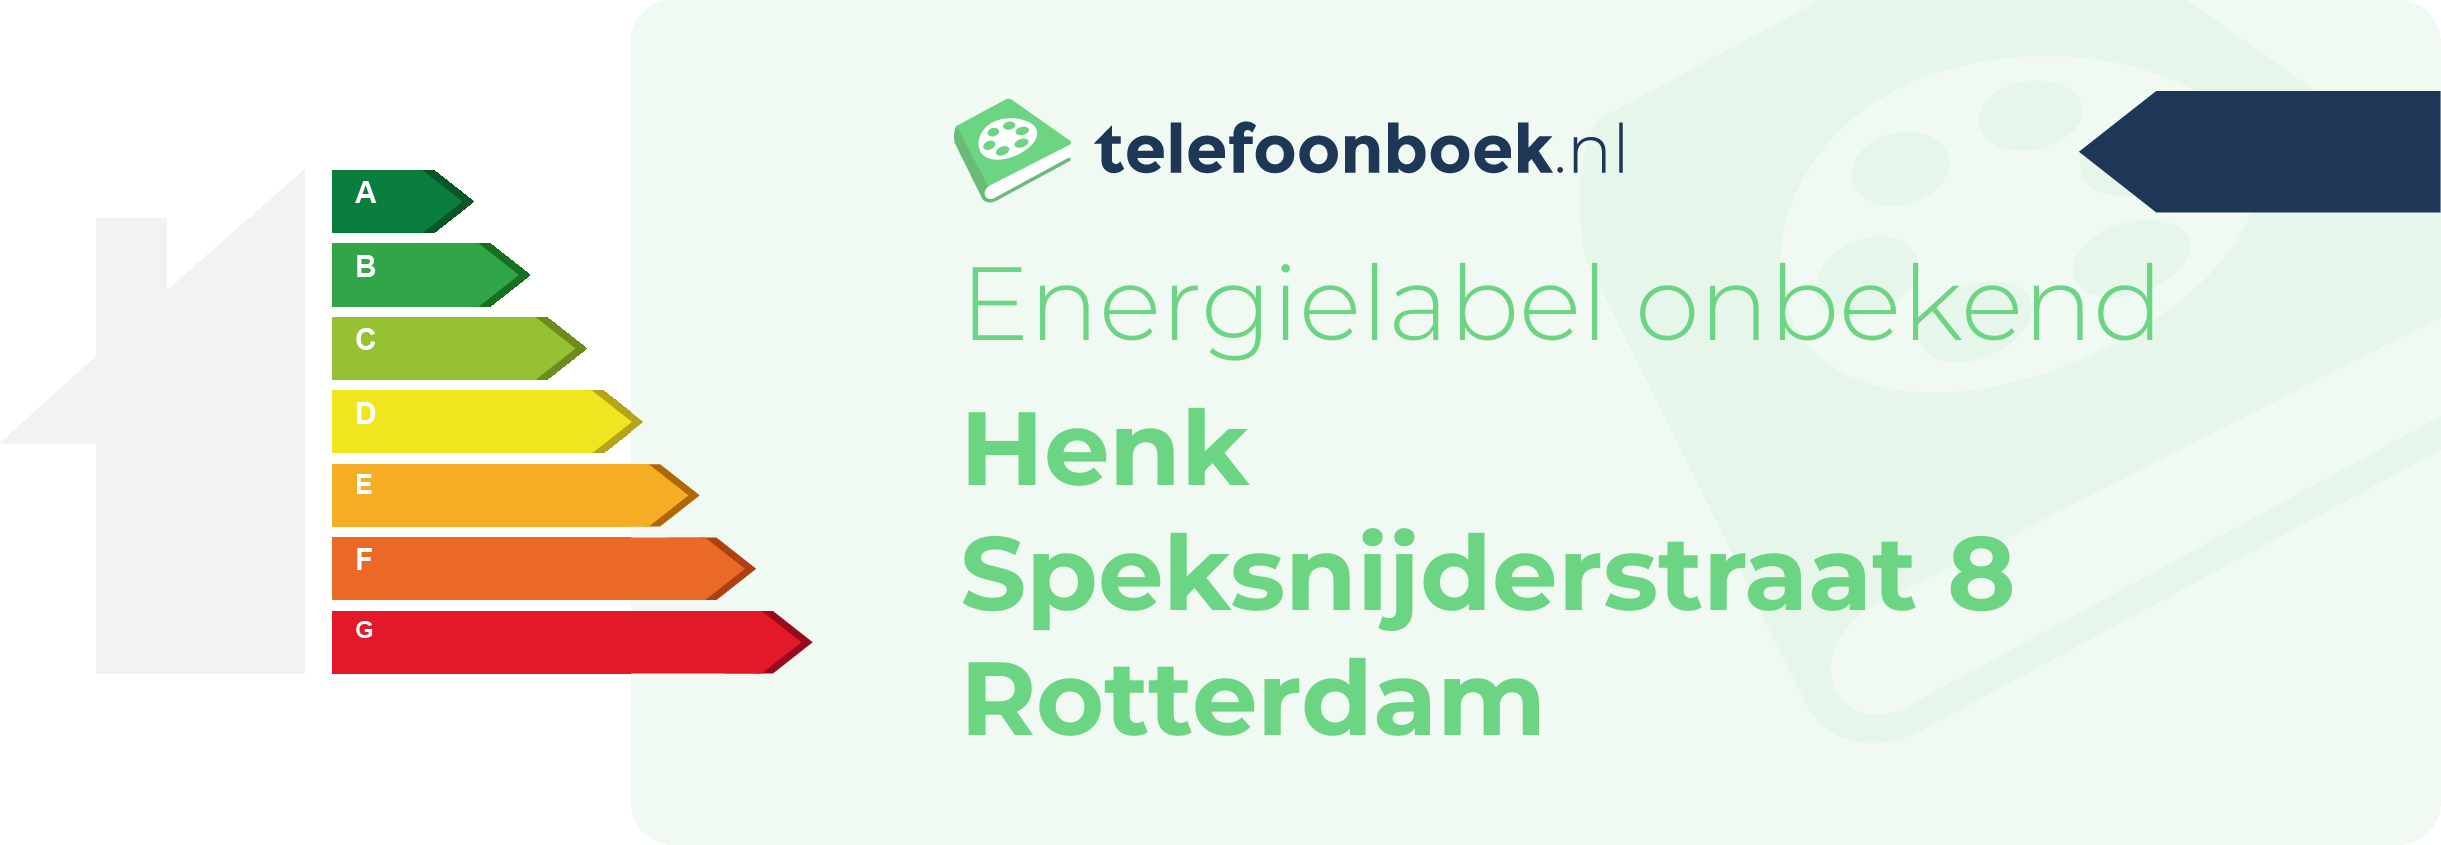 Energielabel Henk Speksnijderstraat 8 Rotterdam